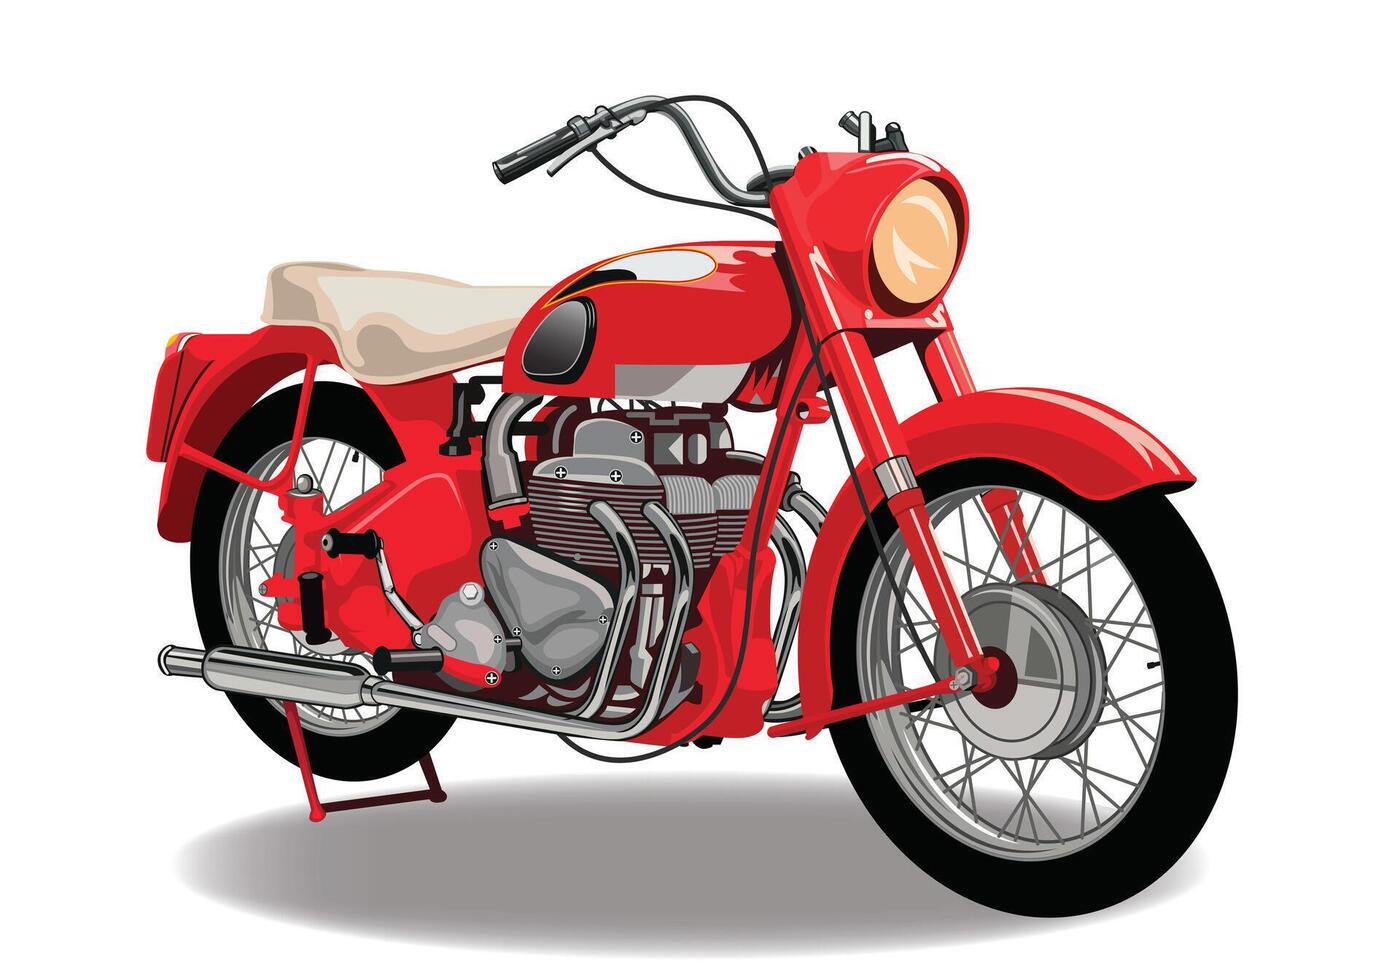 vermelho clássico motocicleta vetor com isolado em branco fundo.